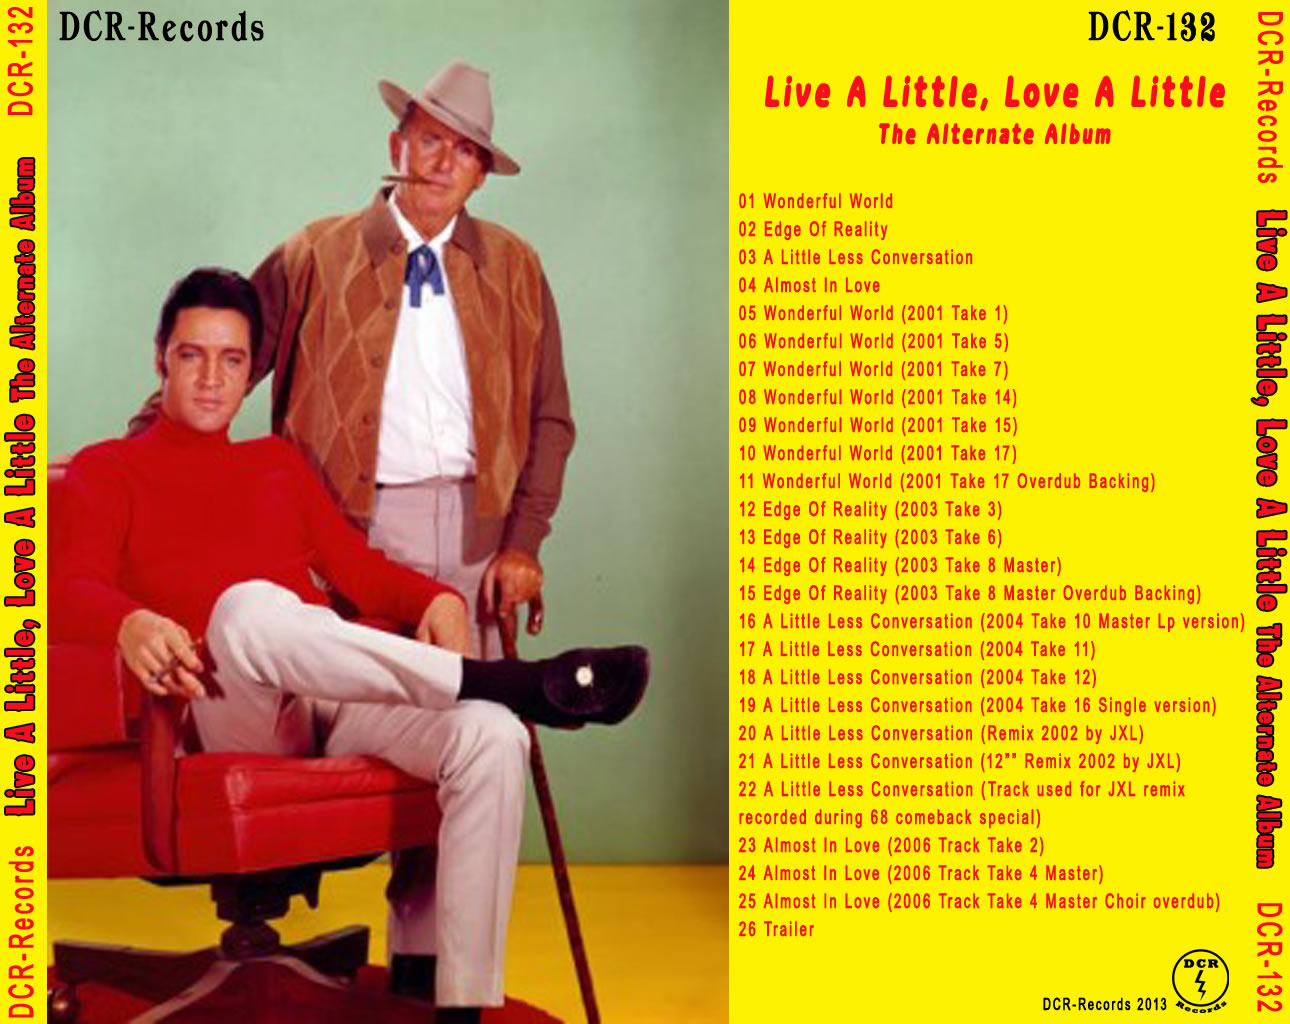 Live a Little, Love a Little (1968)